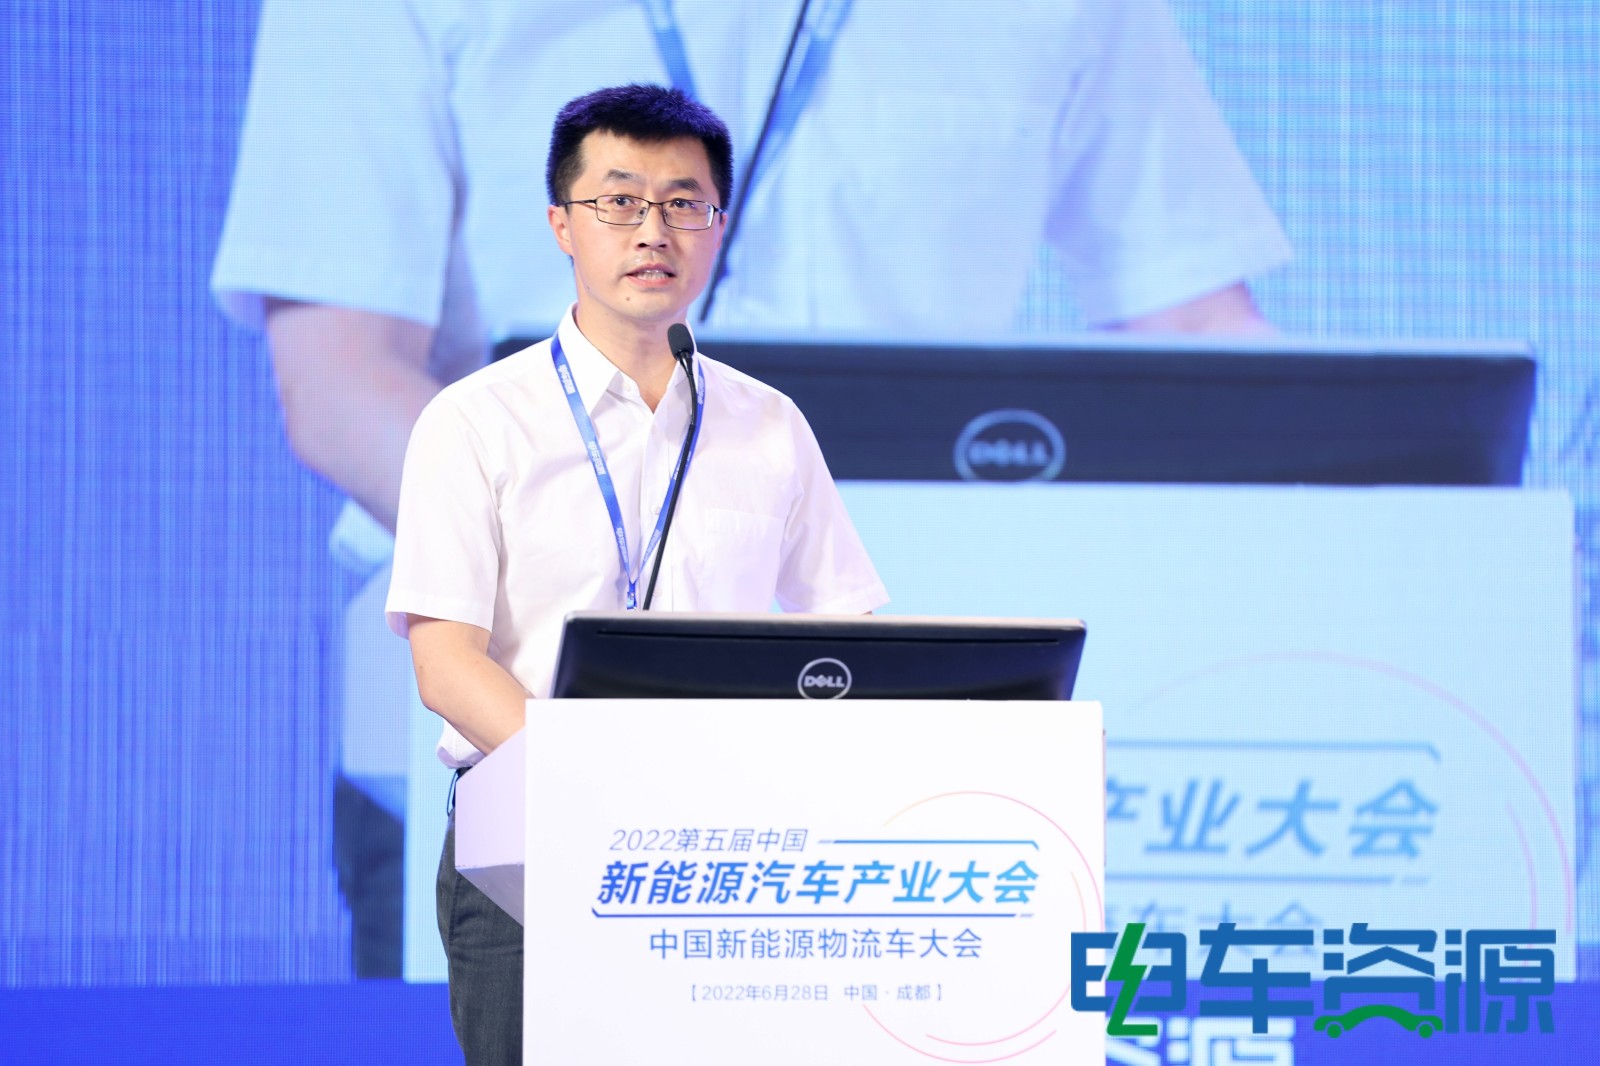 云南供应链协会秘书长姚磊：物流产业正处在大有可为的战略机遇期